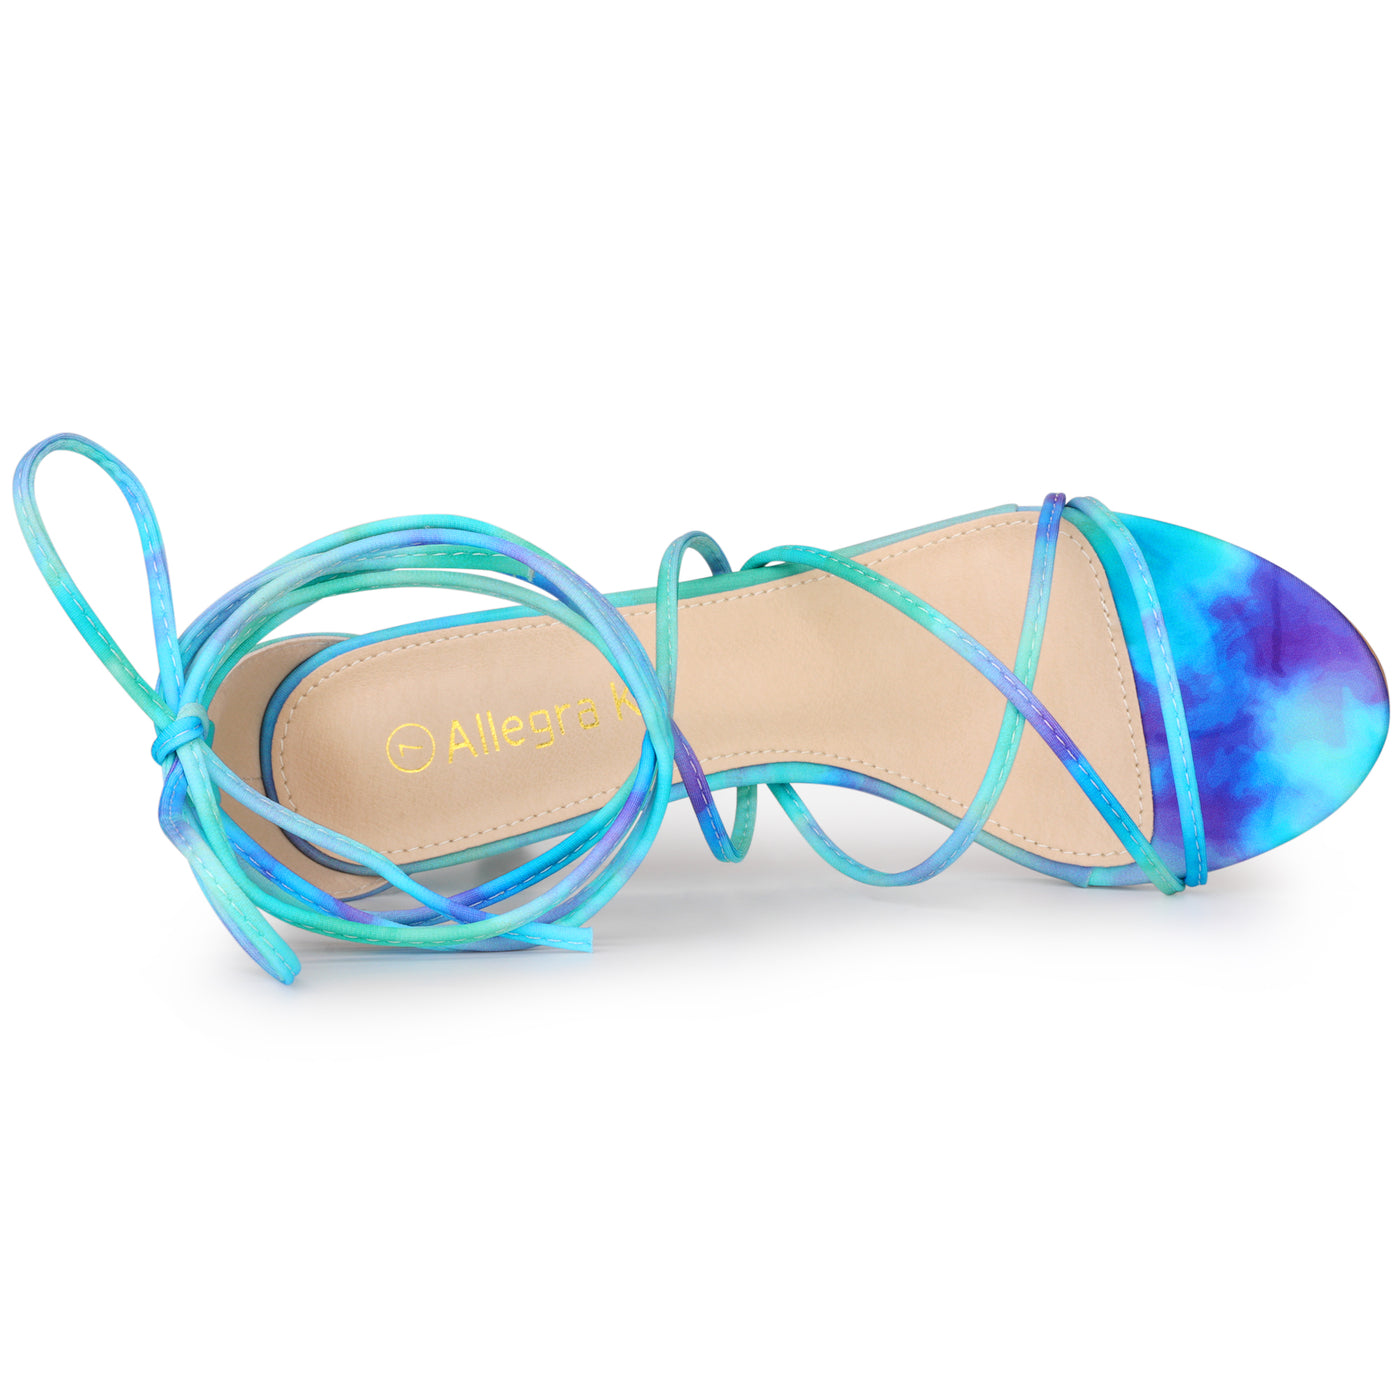 Allegra K Open Toe Strappy Tie Dye Lace Up Kitten Heel Sandals